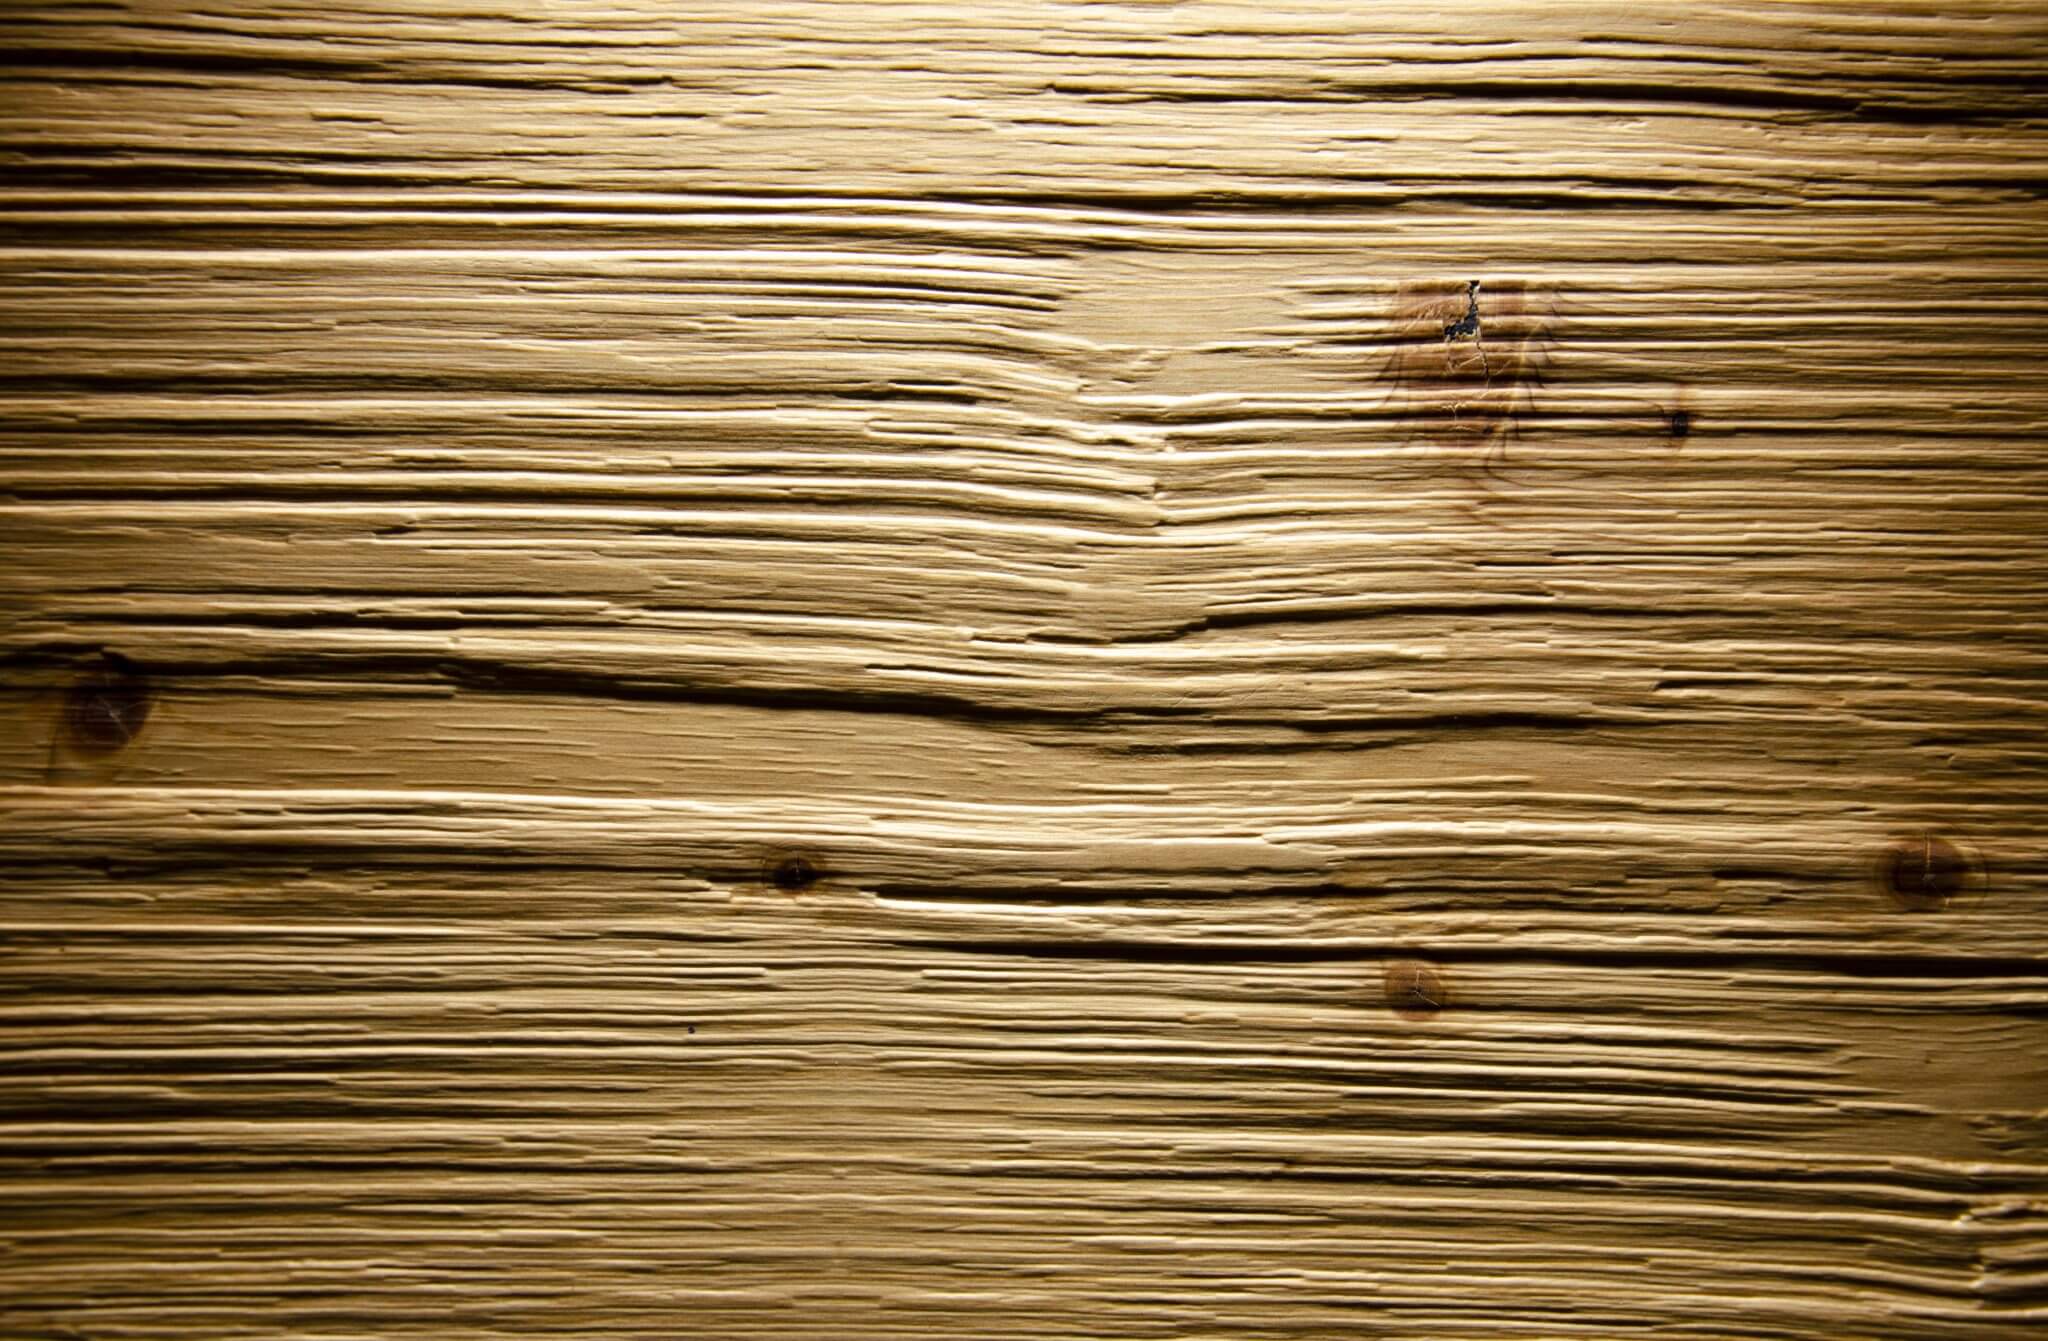 04 – Spruce antique - Real wood veneer